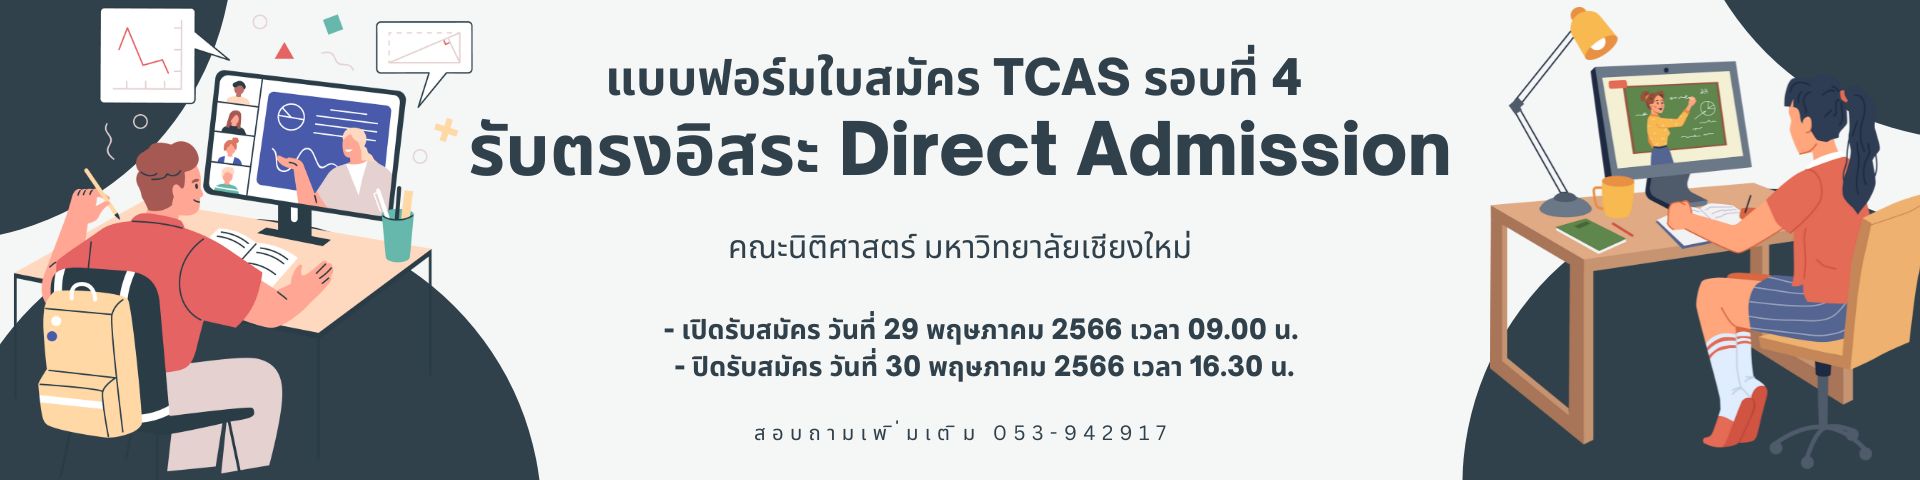 แบบฟอร์มใบสมัคร TCAS รอบที่ 4 รับตรงอิสระ Direct Admission ระดับปริญญาตรี ปีการศึกษา 2566